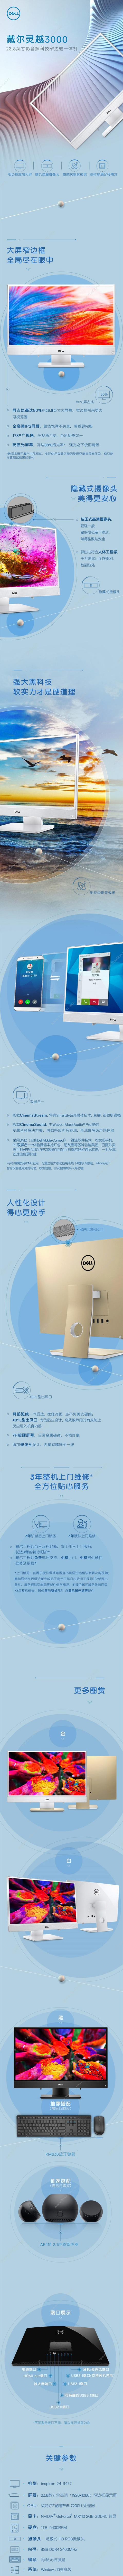 戴尔 Dell 3477-R1528 23.8英寸IPS窄边框台式机 主机+显示器 台式一体机